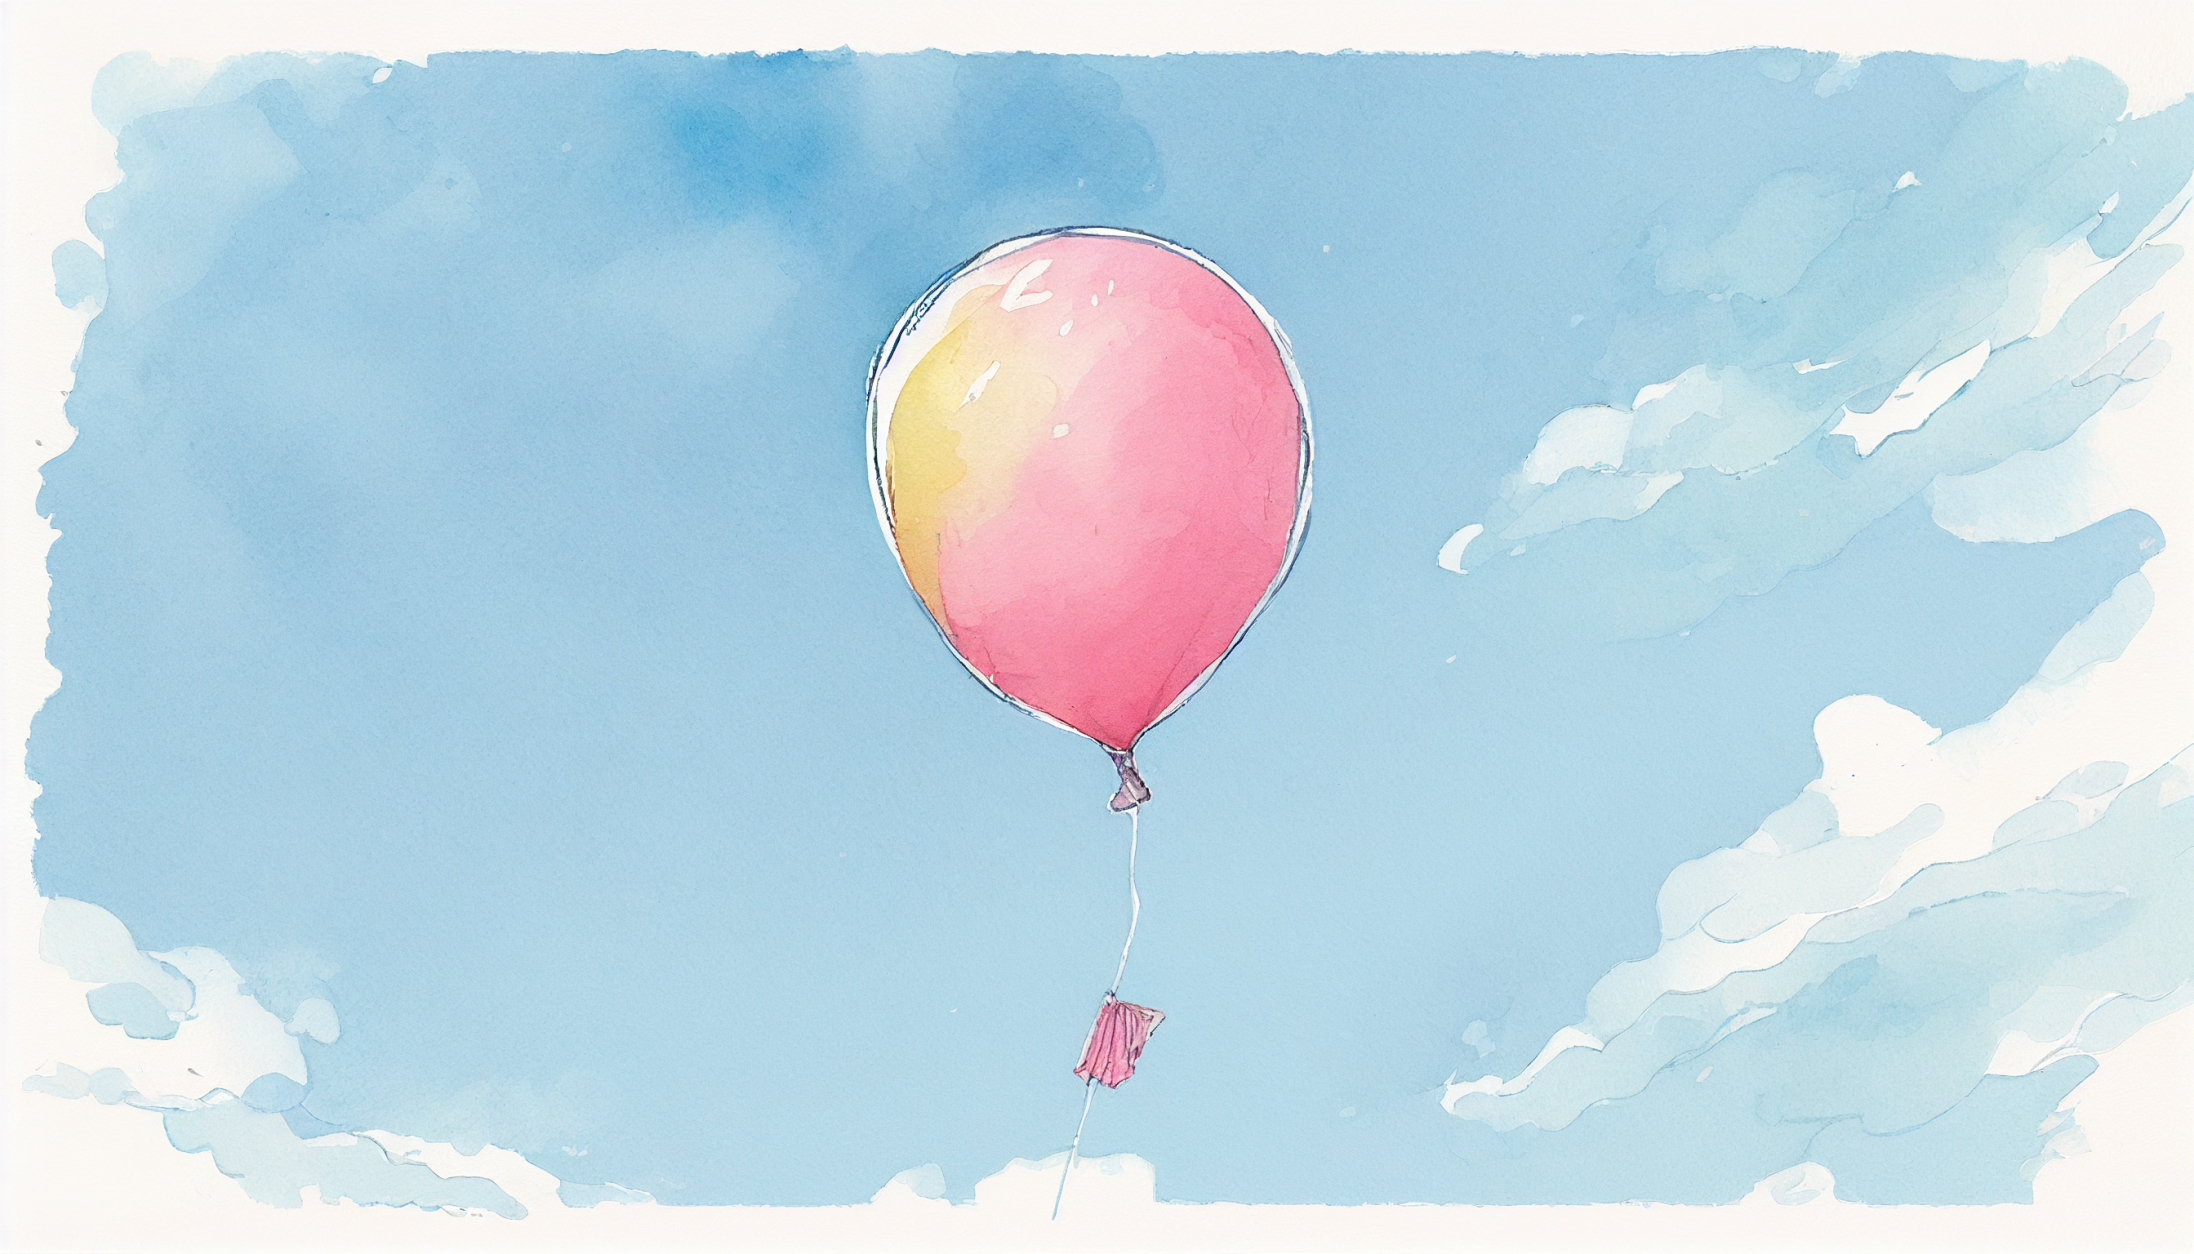 青空に浮かぶピンク色の風船の水彩画